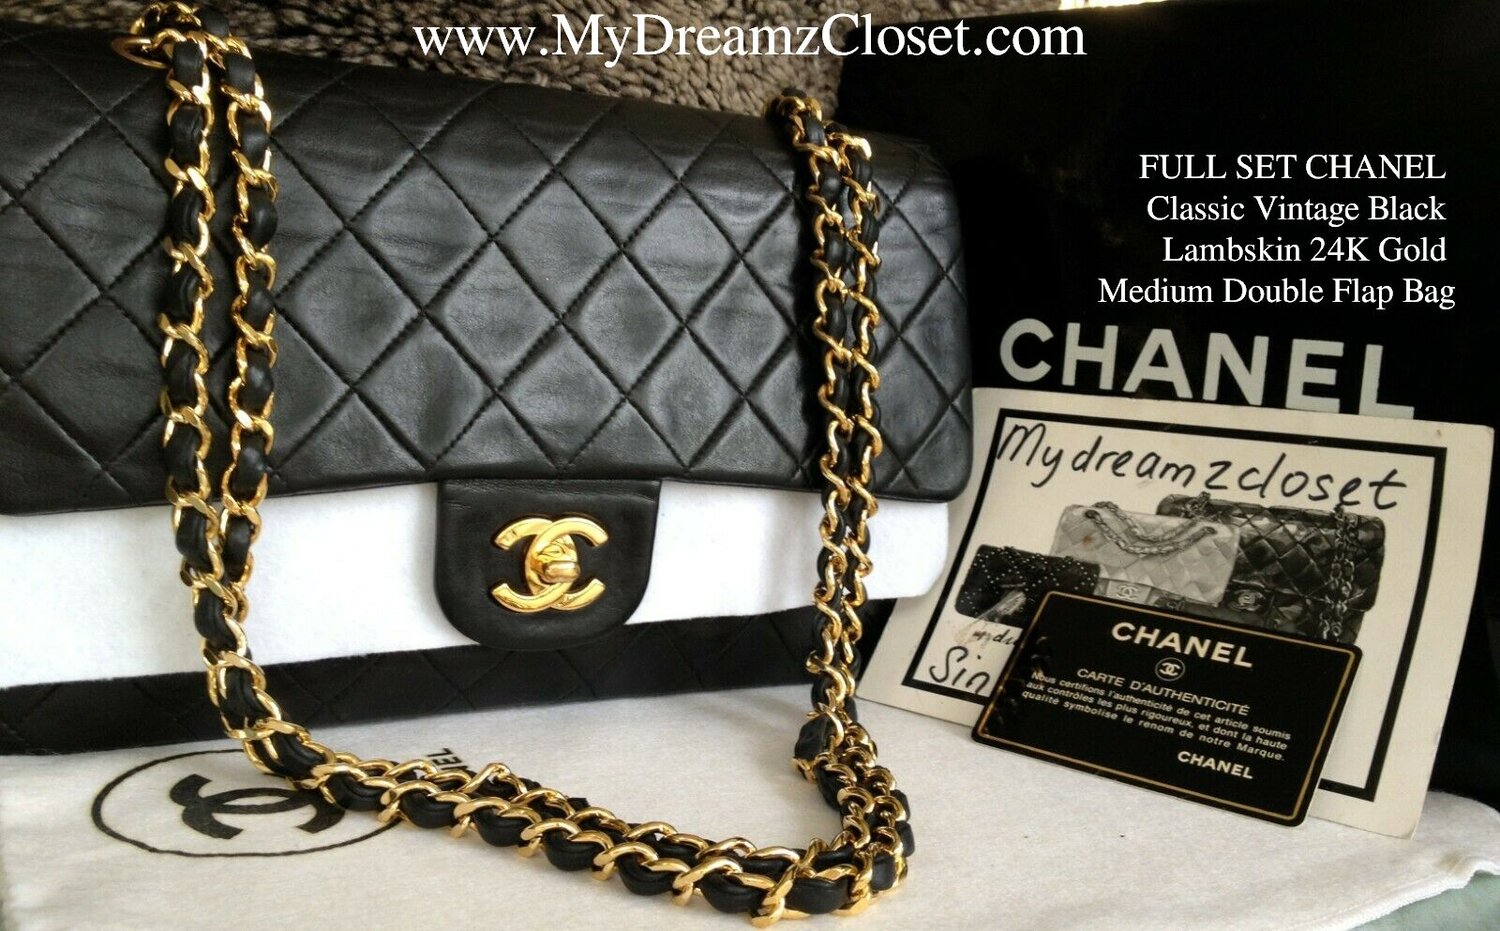 Second Hand Chanel Bags louis-vuitton-bags, Escuparteras-fmedShops